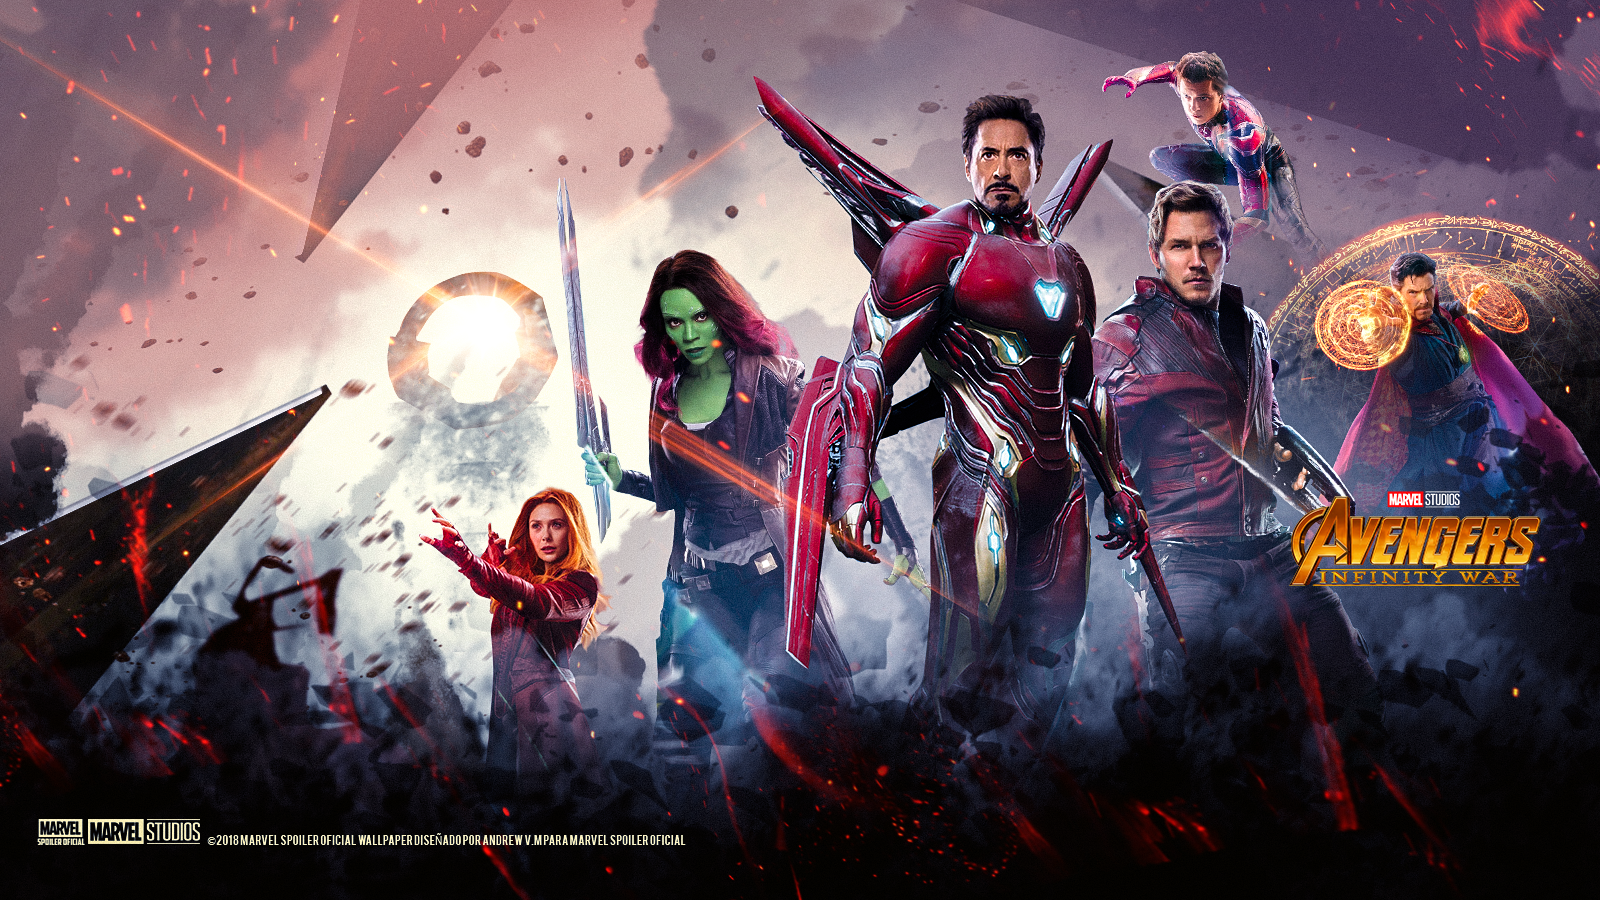 Avengers infinity war 2018 torrent download